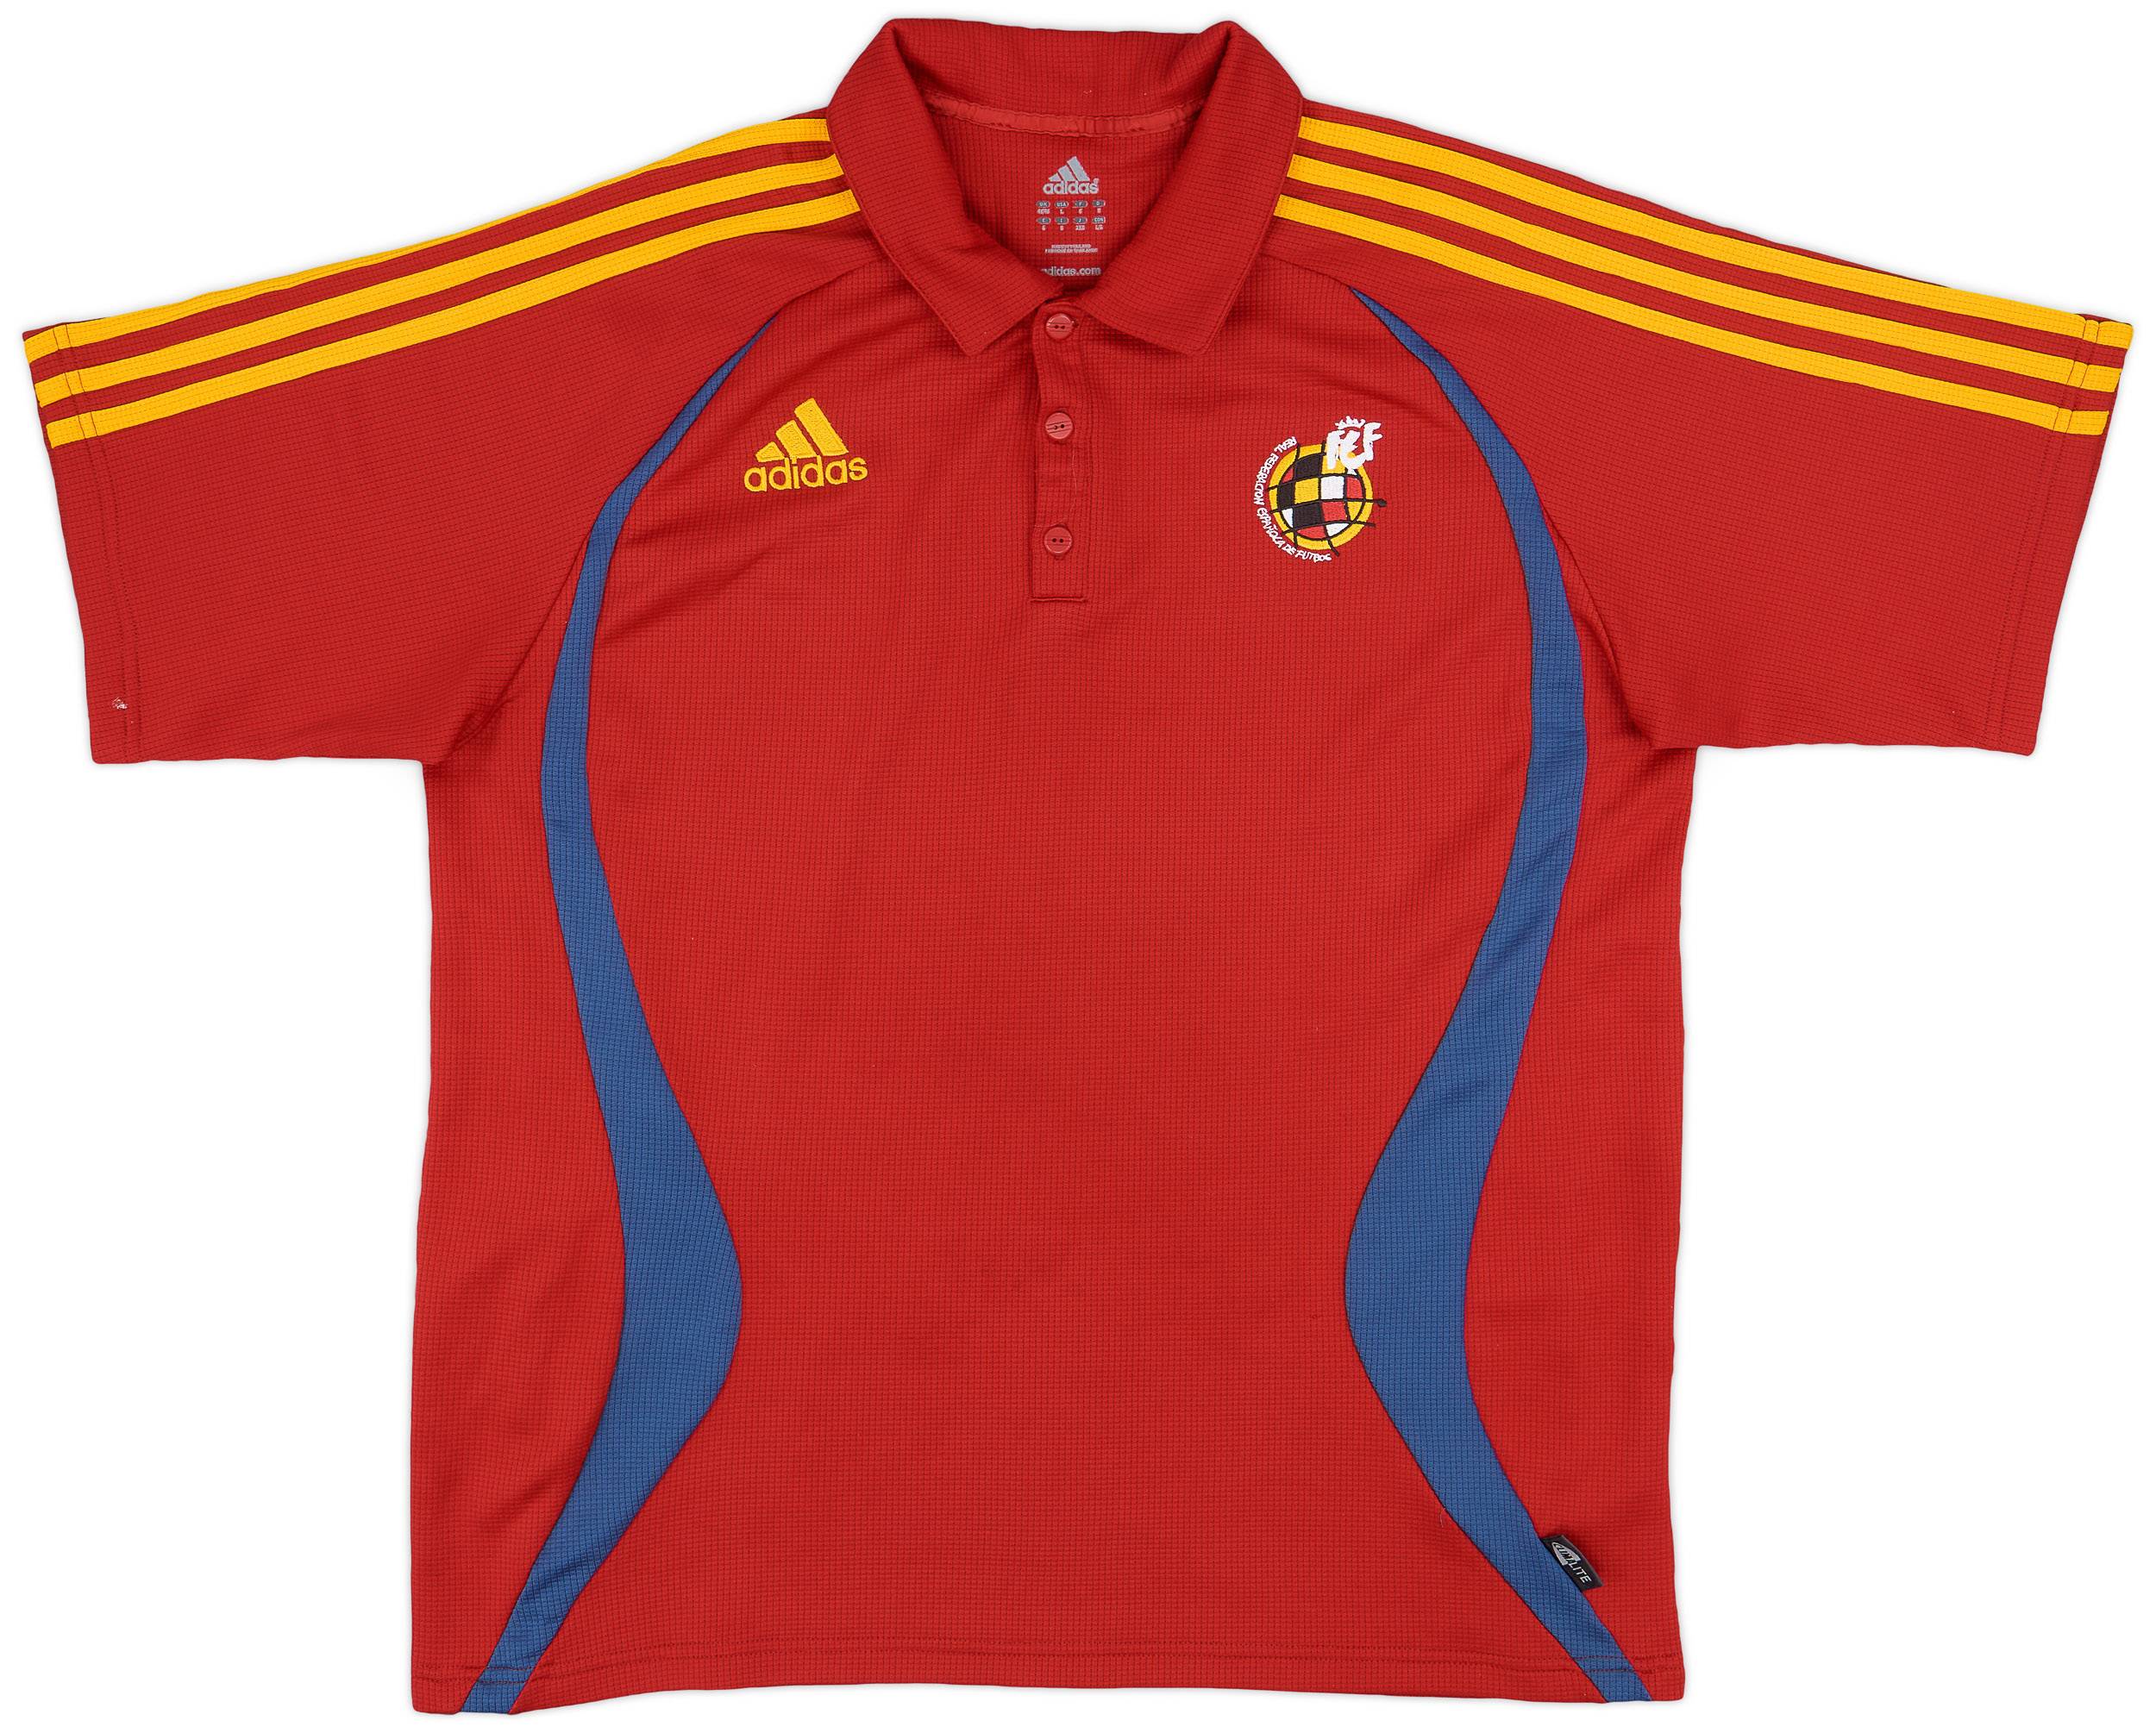 2006-08 Spain adidas Polo Shirt - 9/10 - (L/XL)